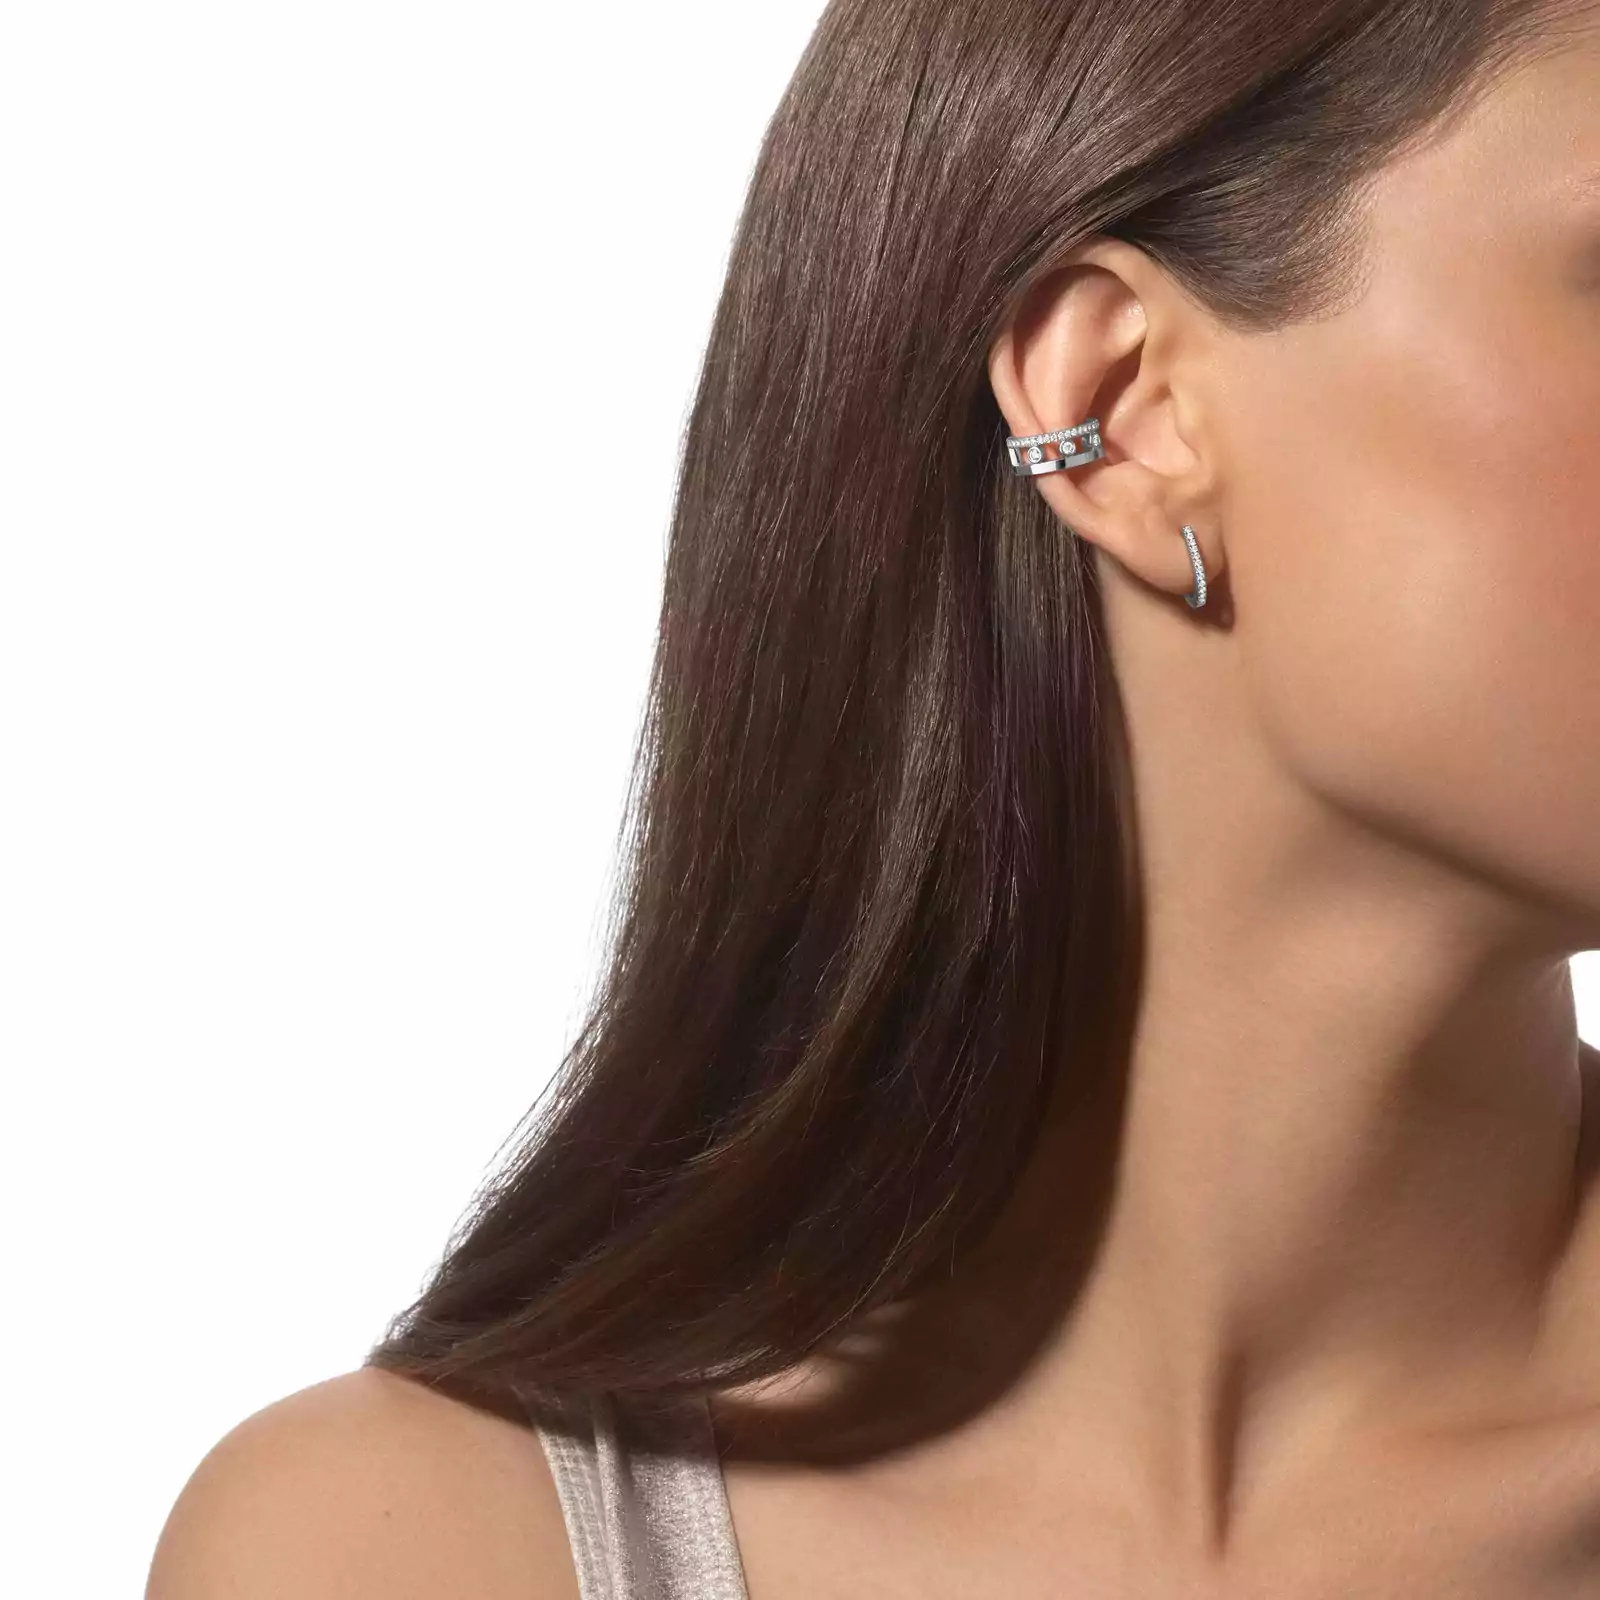 Move Romane Earring clip  White Gold For Her Diamond Earrings 10120-WG